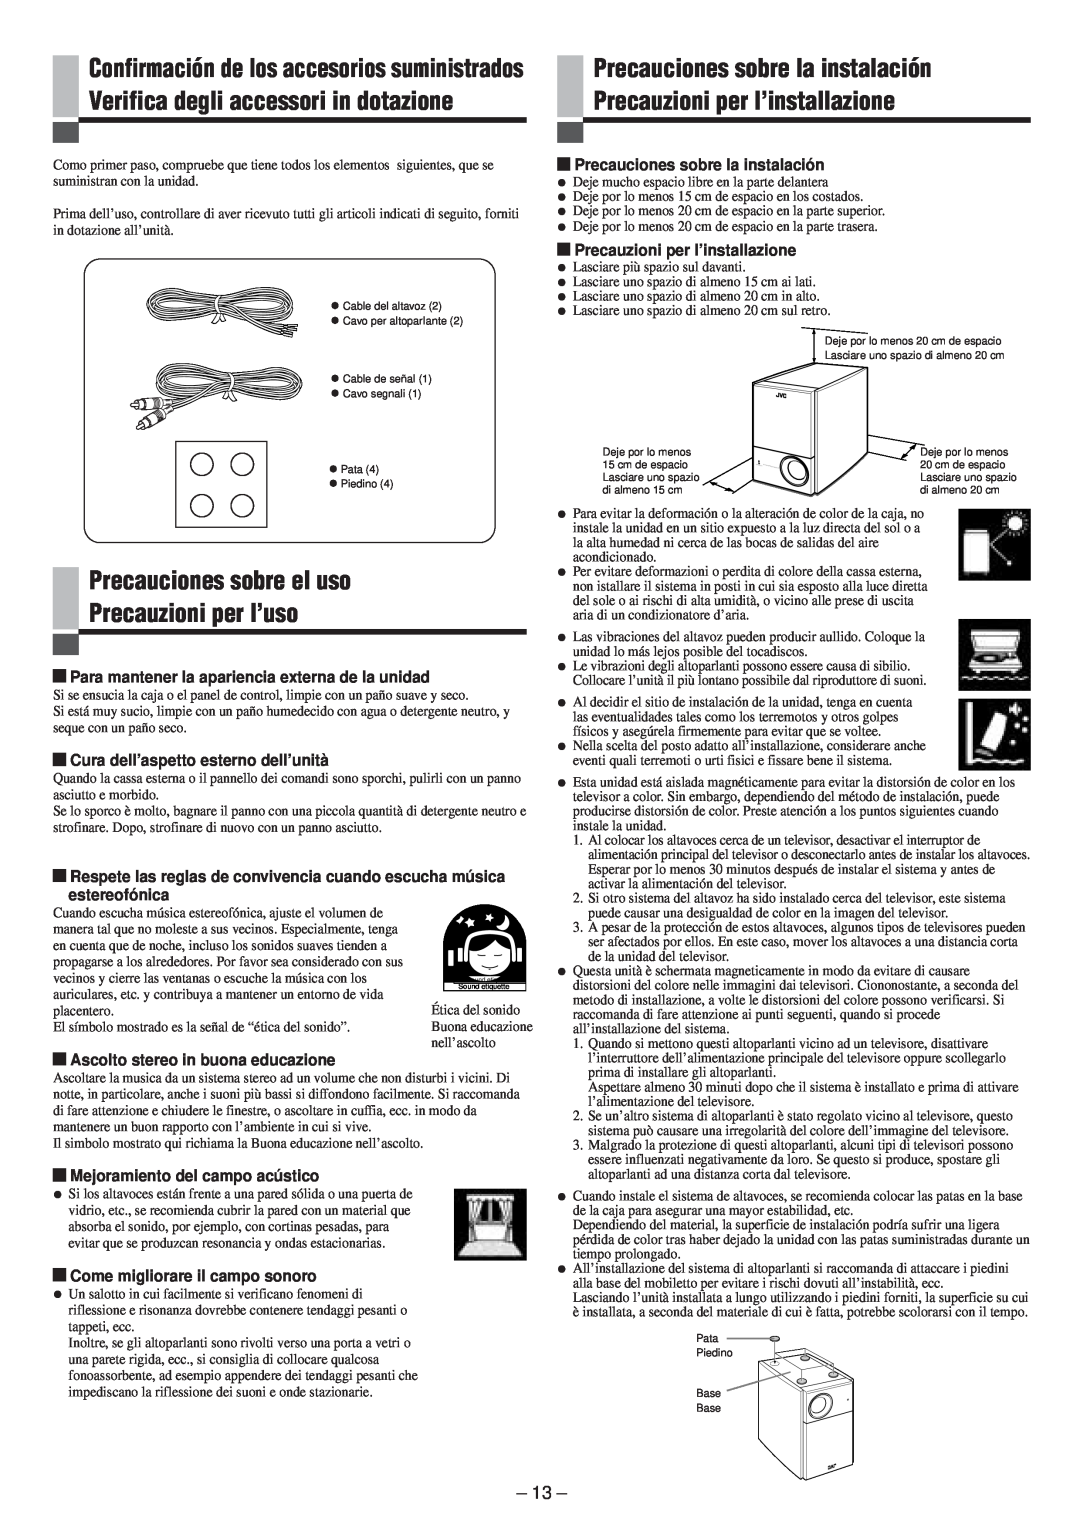 JVC SP-PW100 manual Precauciones sobre el uso Precauzioni per l’uso, Precauciones sobre la instalación 